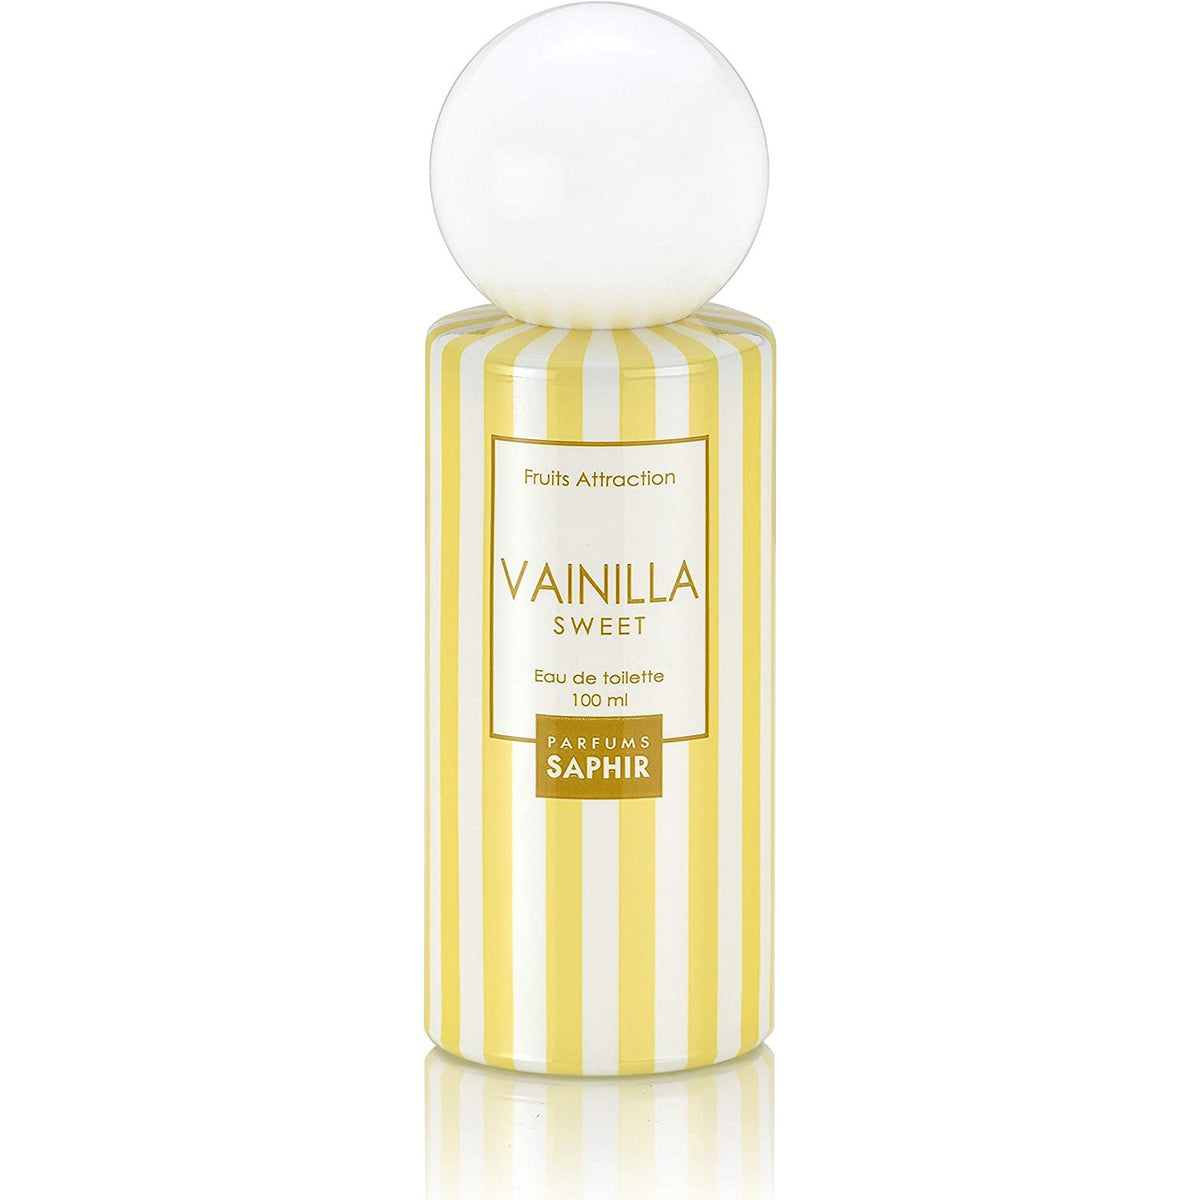 Vainilla Sweet Eau de Toilette Parfums Saphir - 100ml